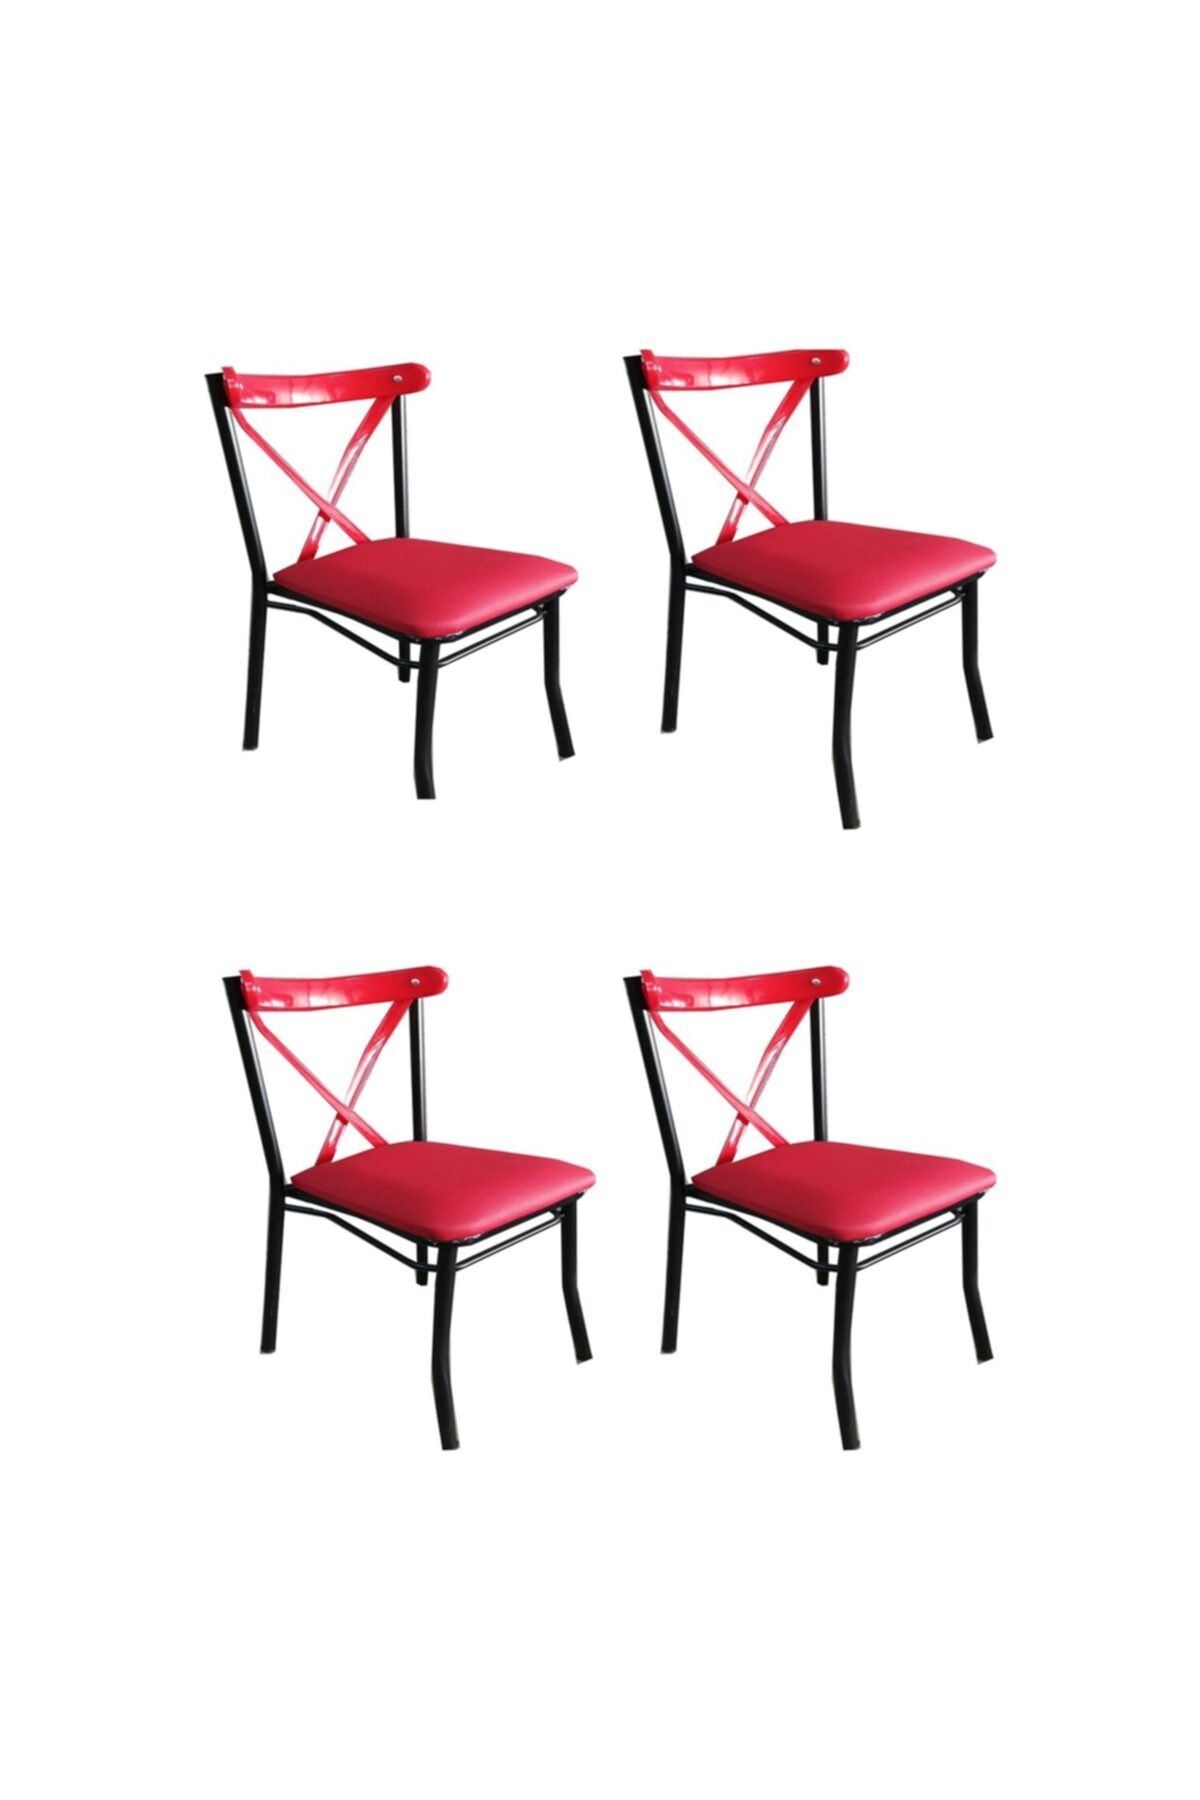 trendevim Tonet Sandalye Mutfak Sandalye Cafe Sandalye Restoran Sandalye 4 Adet Fiyatıdır